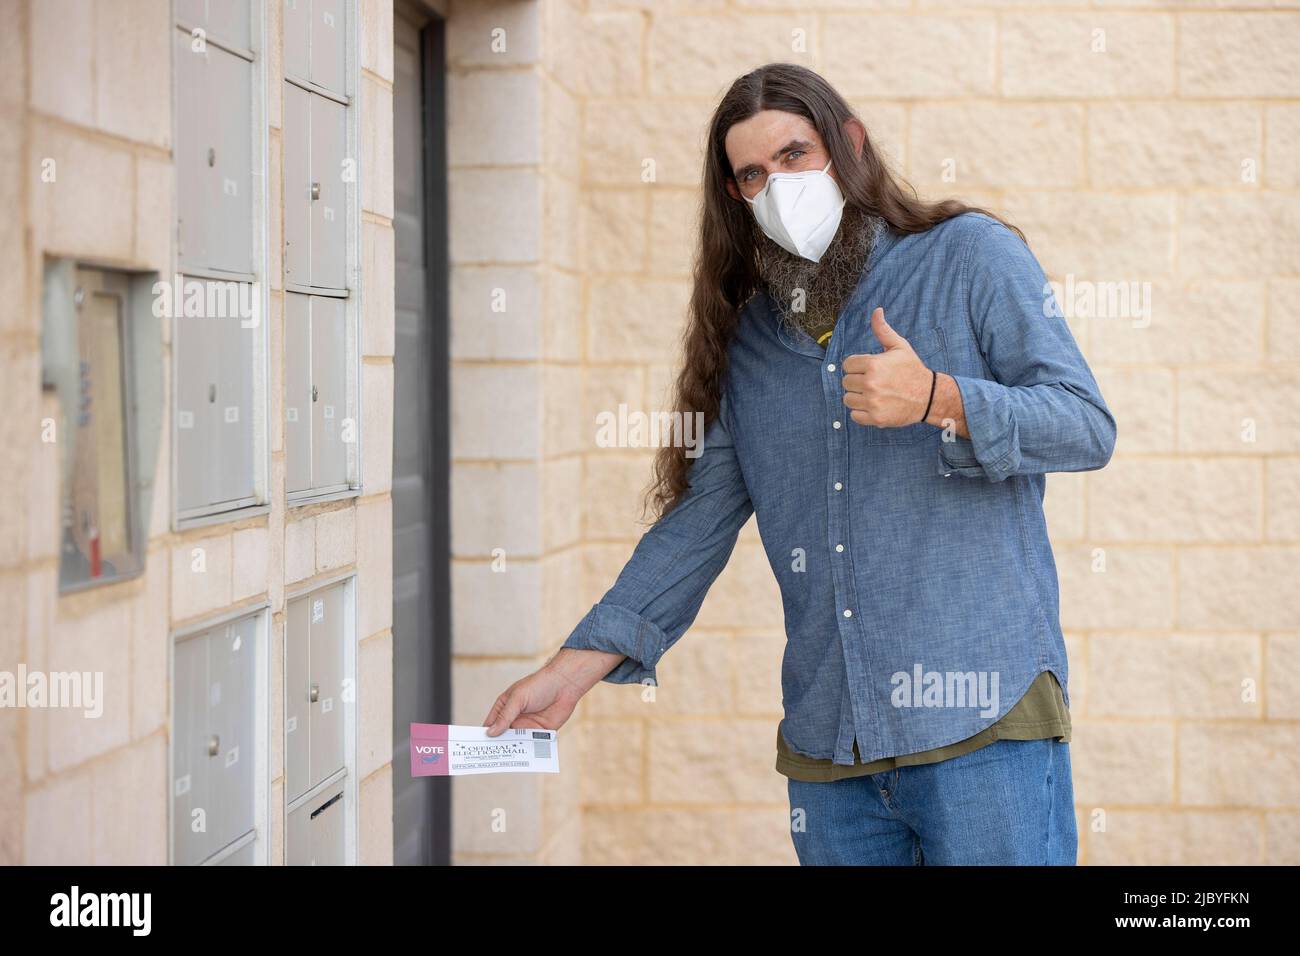 un homme aux cheveux longs et à la barbe complète portant un masque et mettant le courrier électoral officiel dans le bulletin de vote dans la fente de courrier sortant de son immeuble Banque D'Images